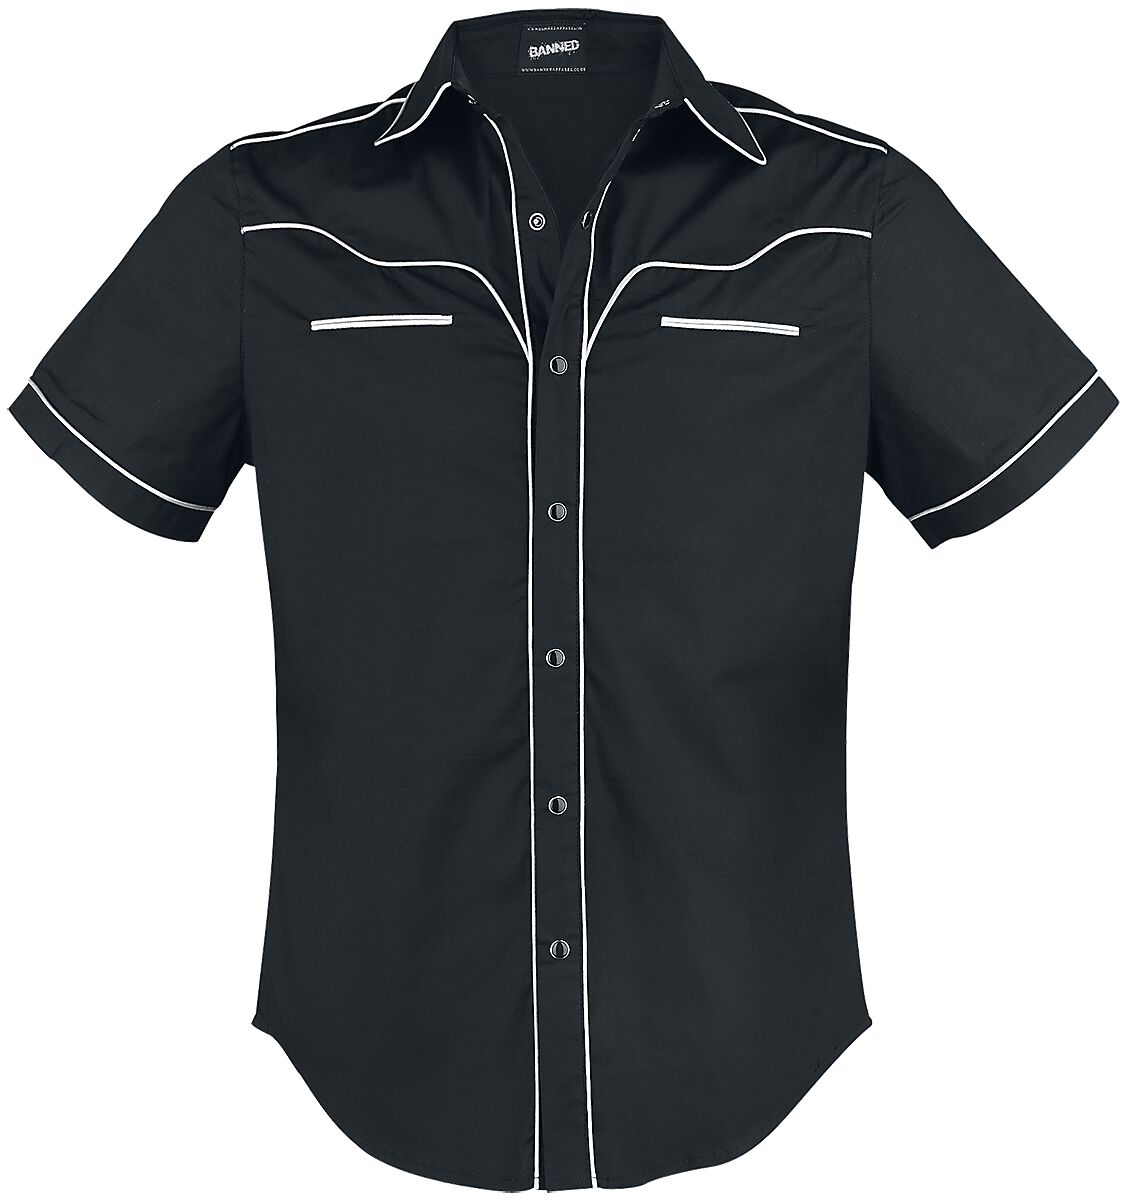 Banned Alternative - Rockabilly Kurzarmhemd - Plain Trim - S bis 5XL - für Männer - Größe M - schwarz/weiß